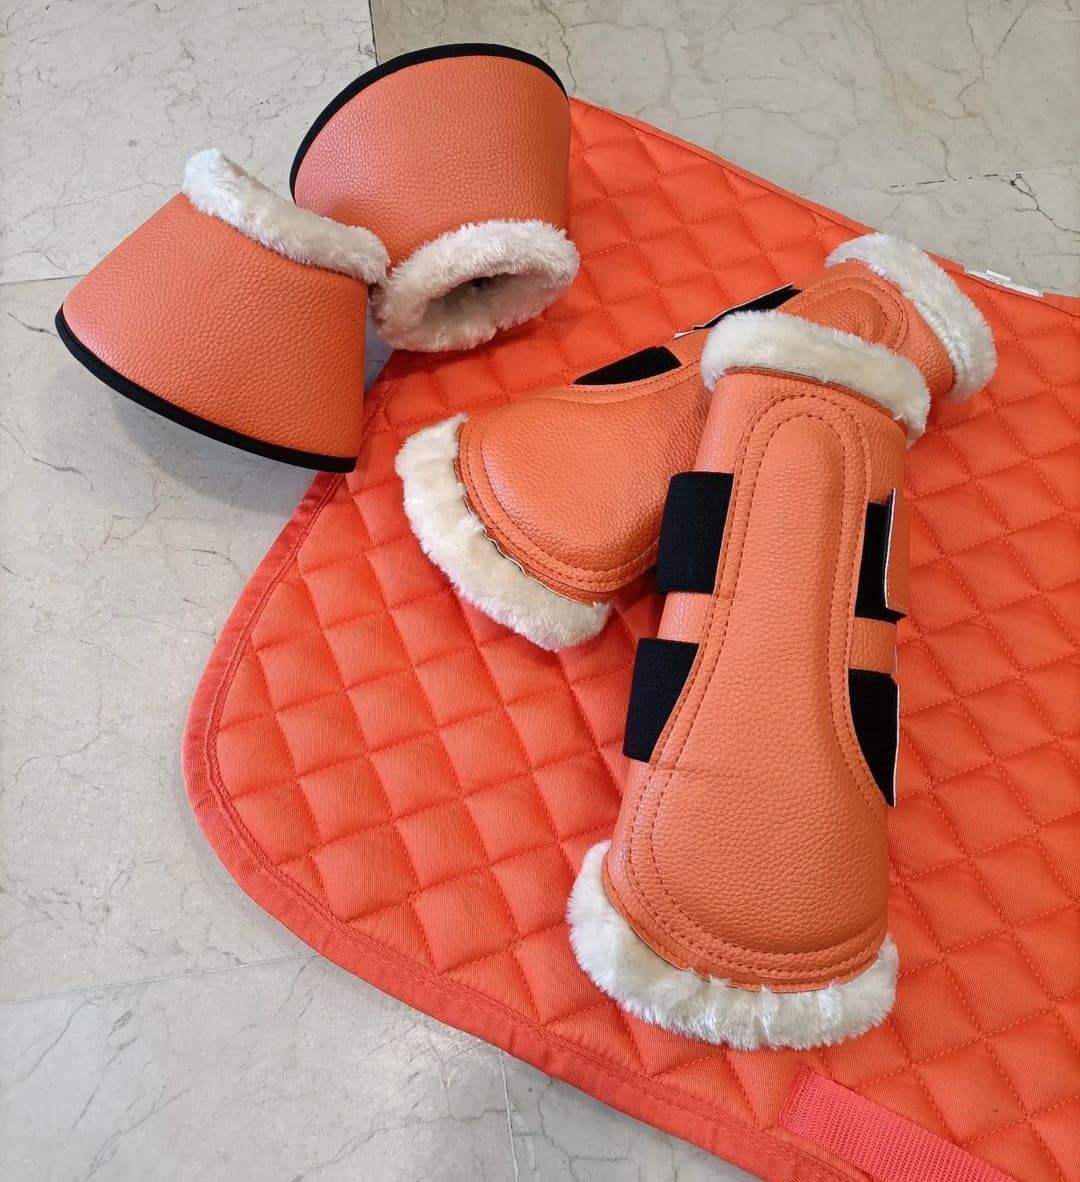 Campana HKM Sports Equipment Comfort Premium color naranja TALLA M (par) - Imagen 2